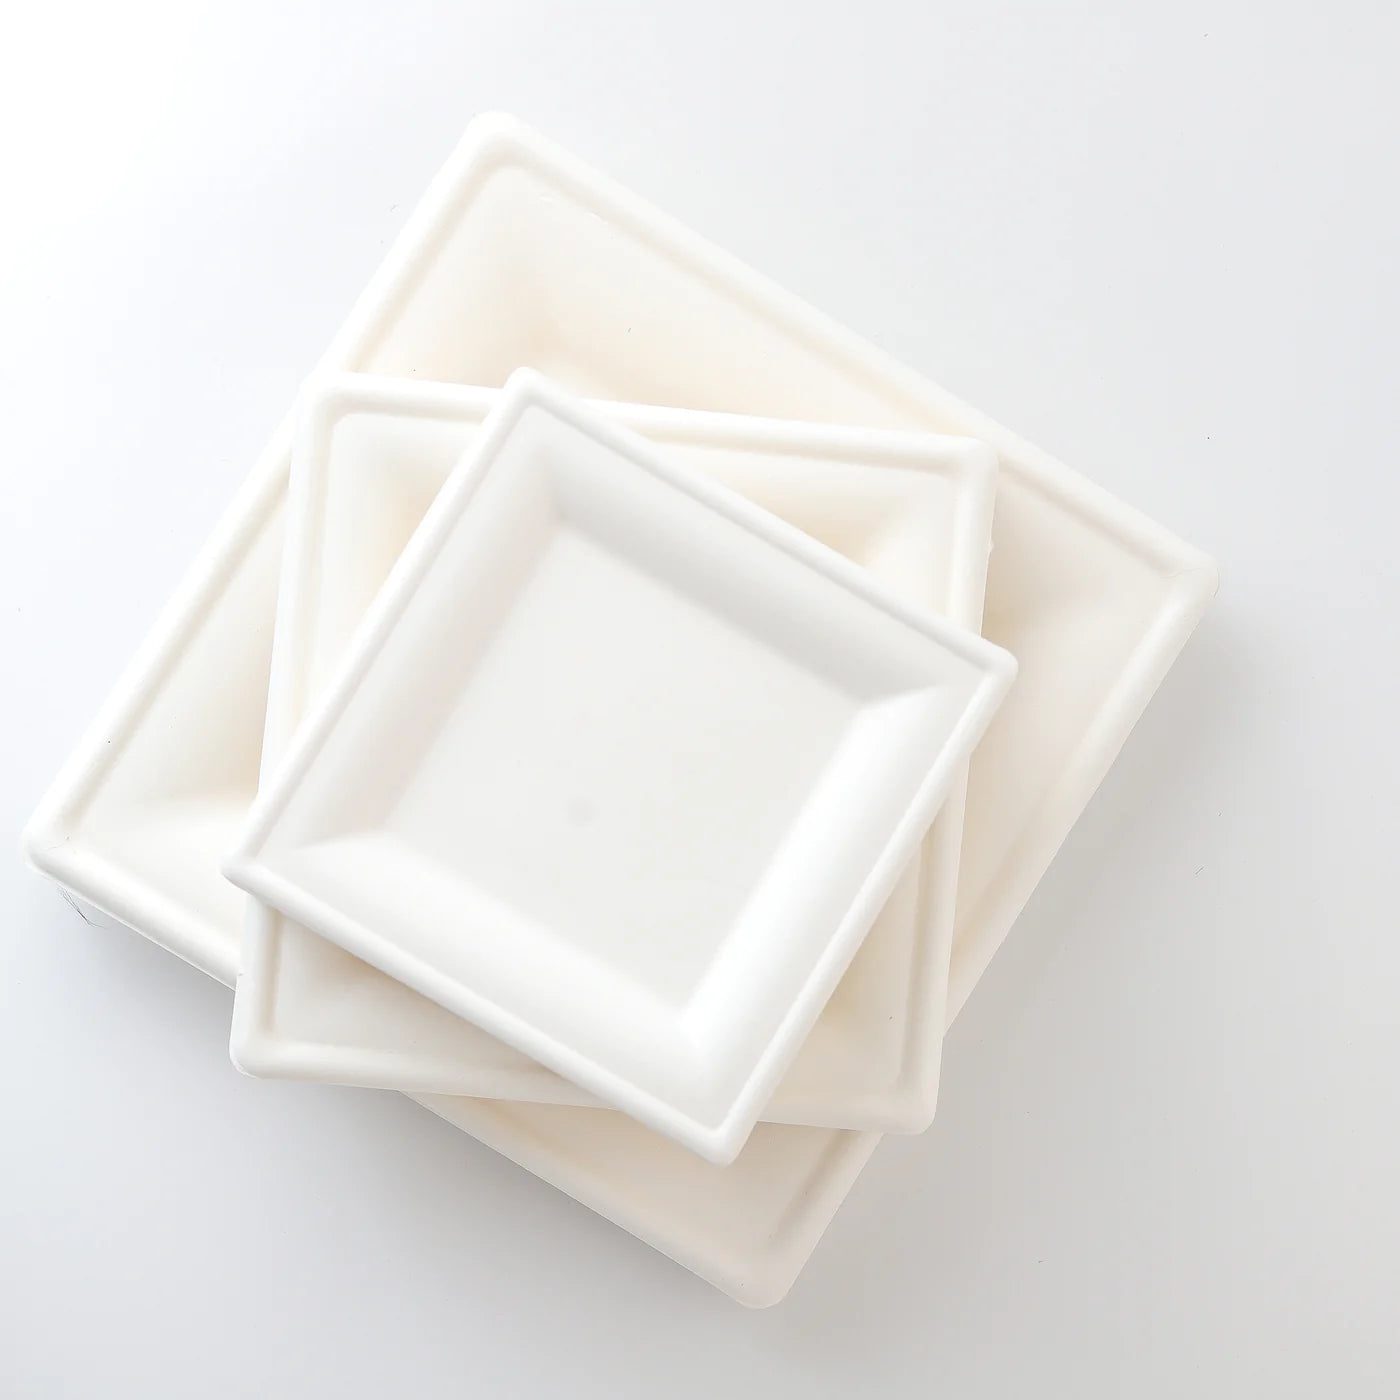 Cukornád tányér szögletes (260x260)  - 50 db/cs